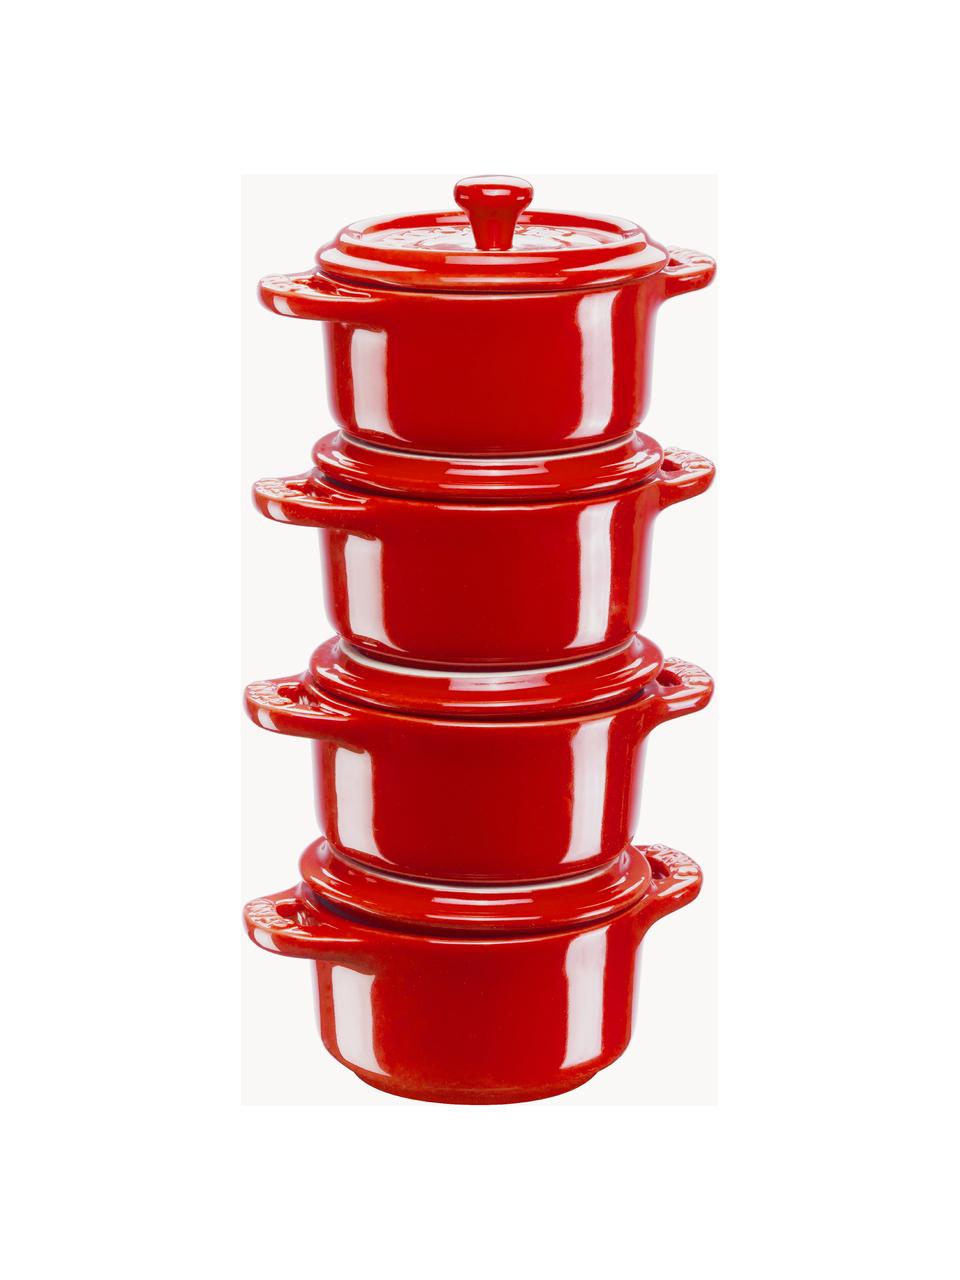 Hrnce Mini Cocotte, 4 ks, Keramika, smaltovaná, Červená, Ø 10 cm x V 7 cm, 200 ml